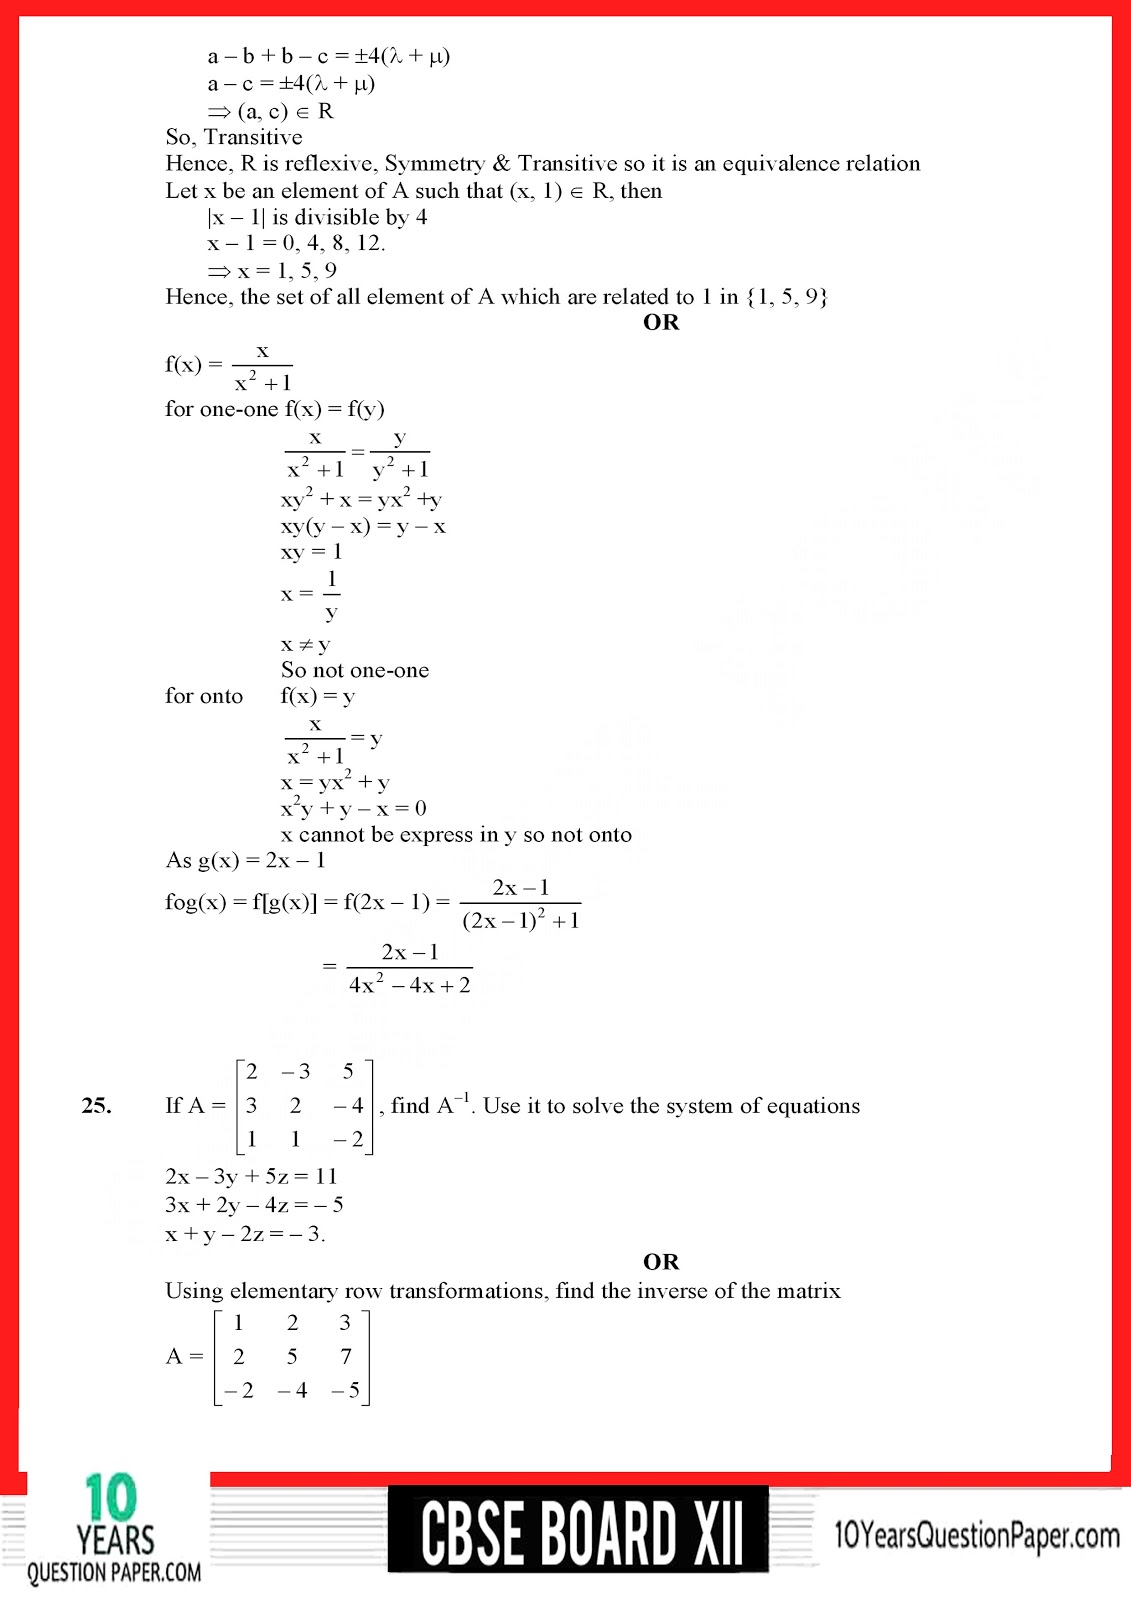 CBSE Class 12 Mathematics 2018 Solved Paper